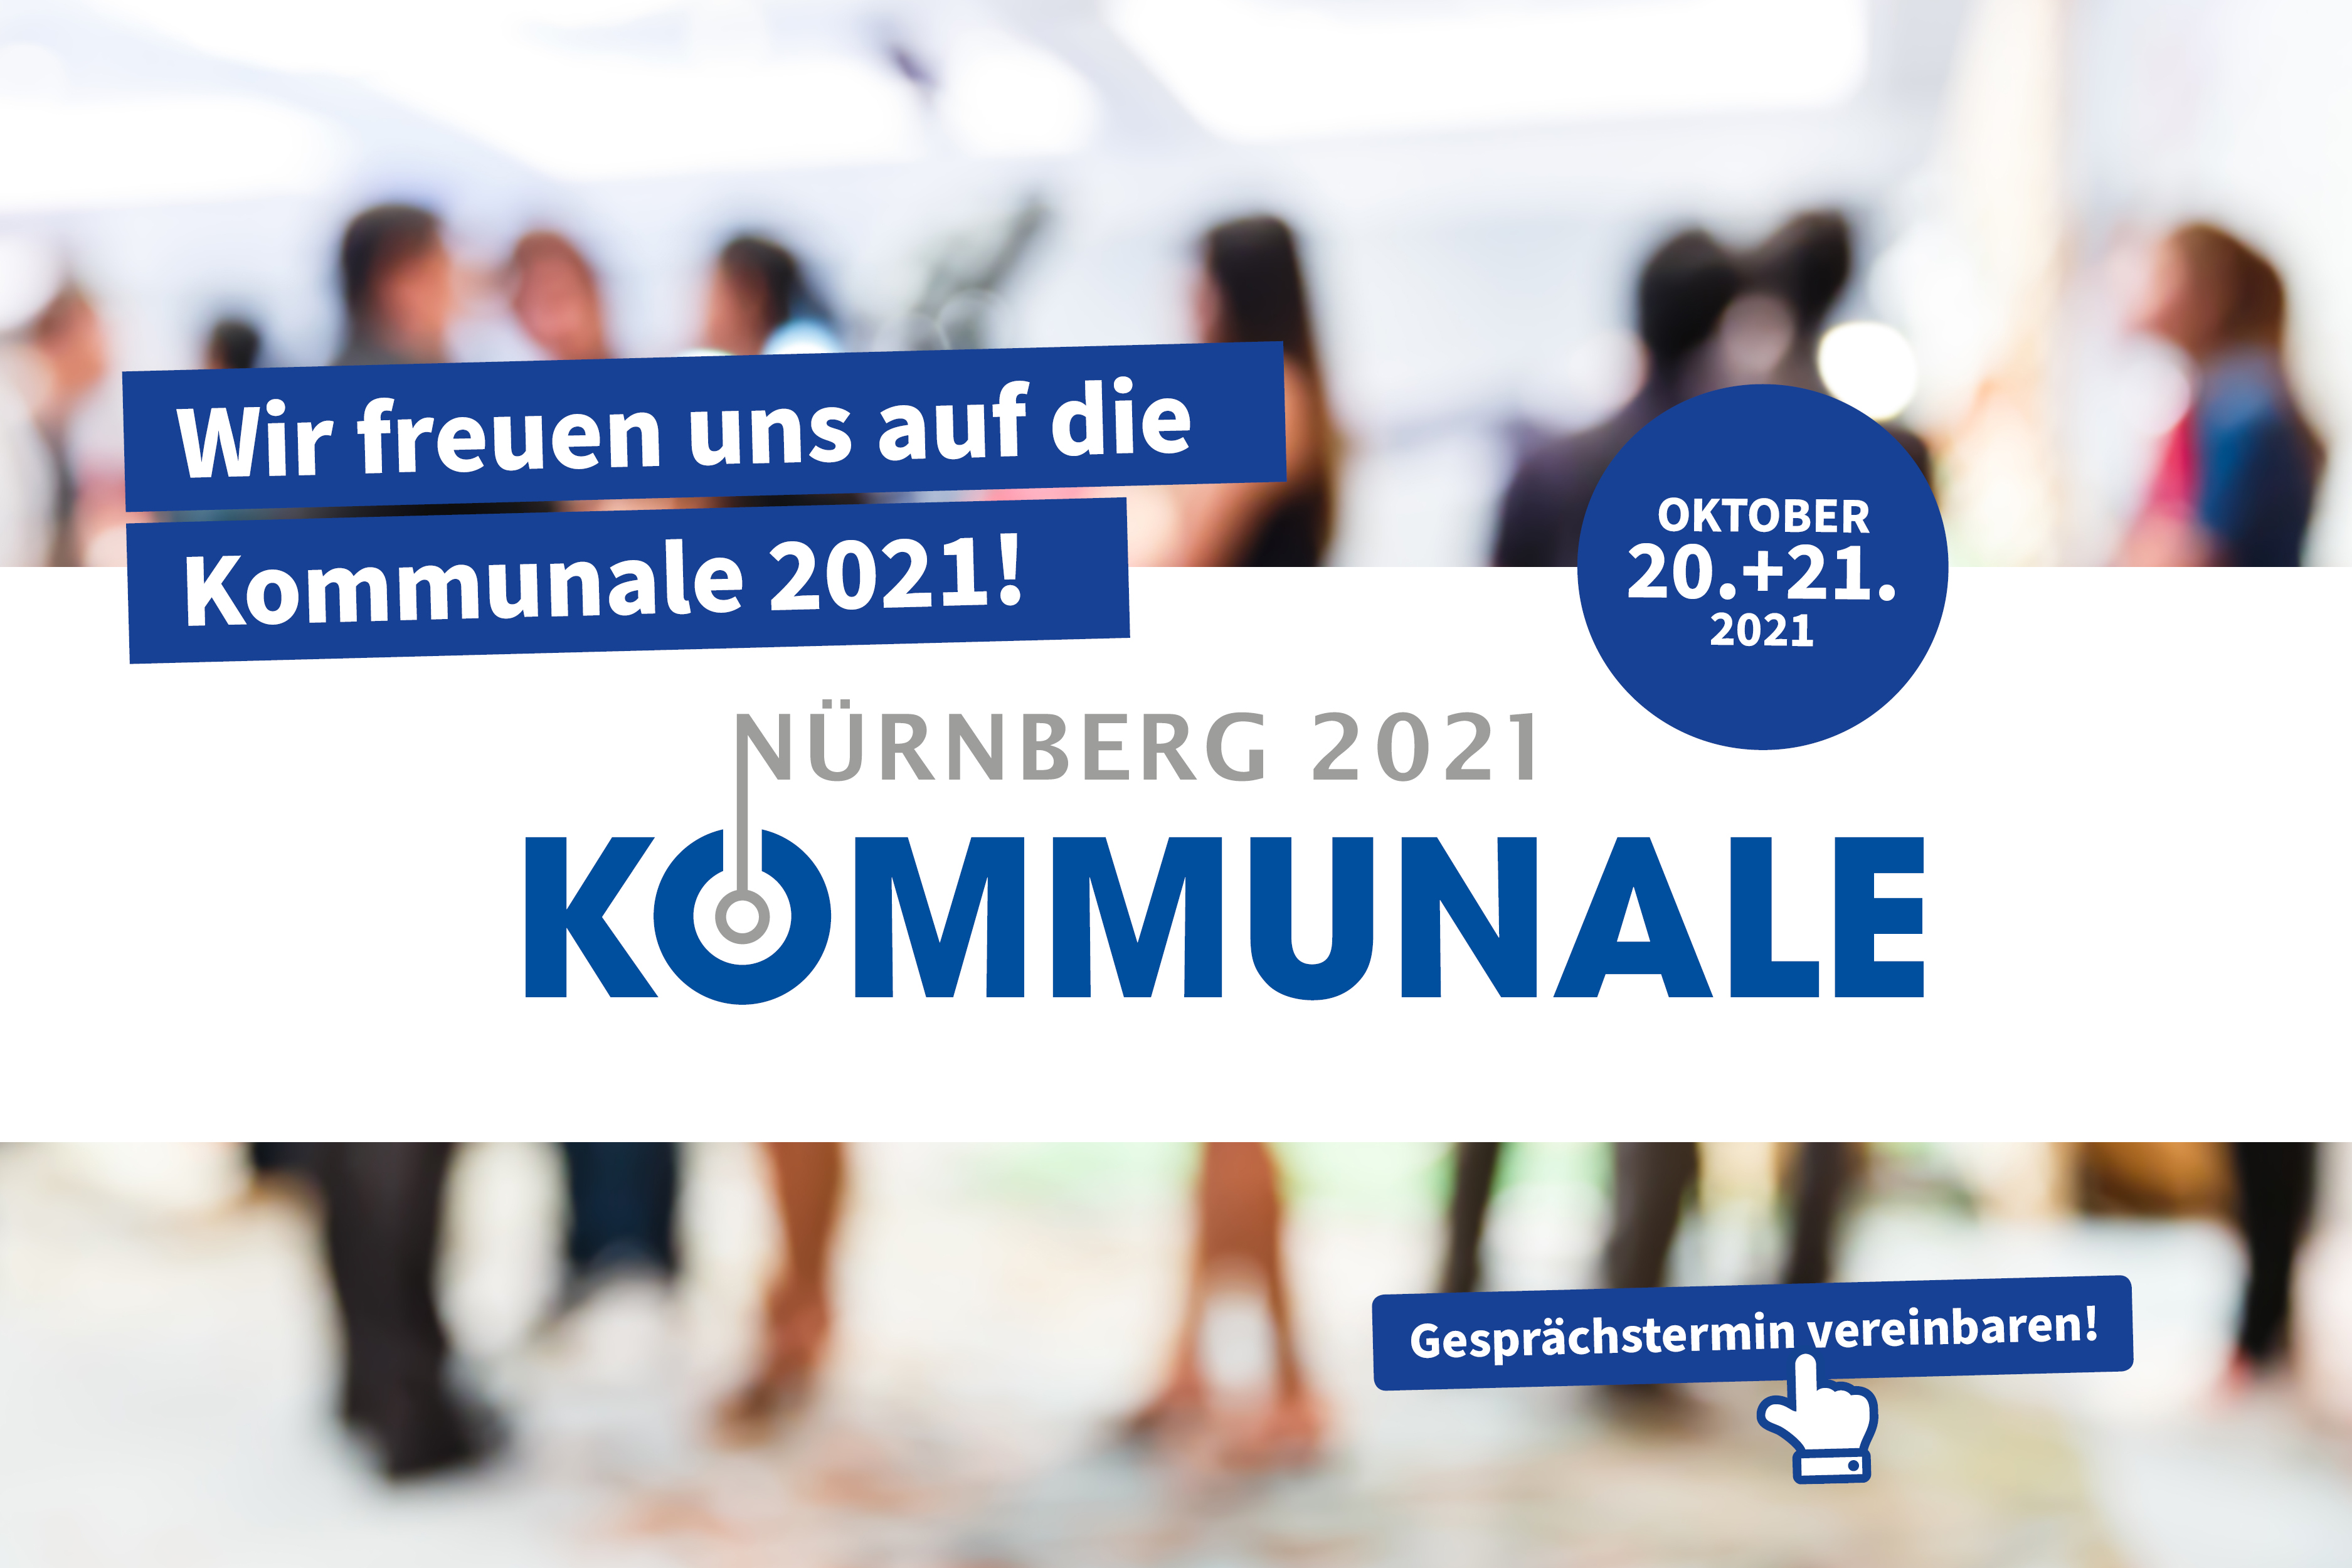 Wir freuen un sauf die Kommunale in Nürnberg 2021!